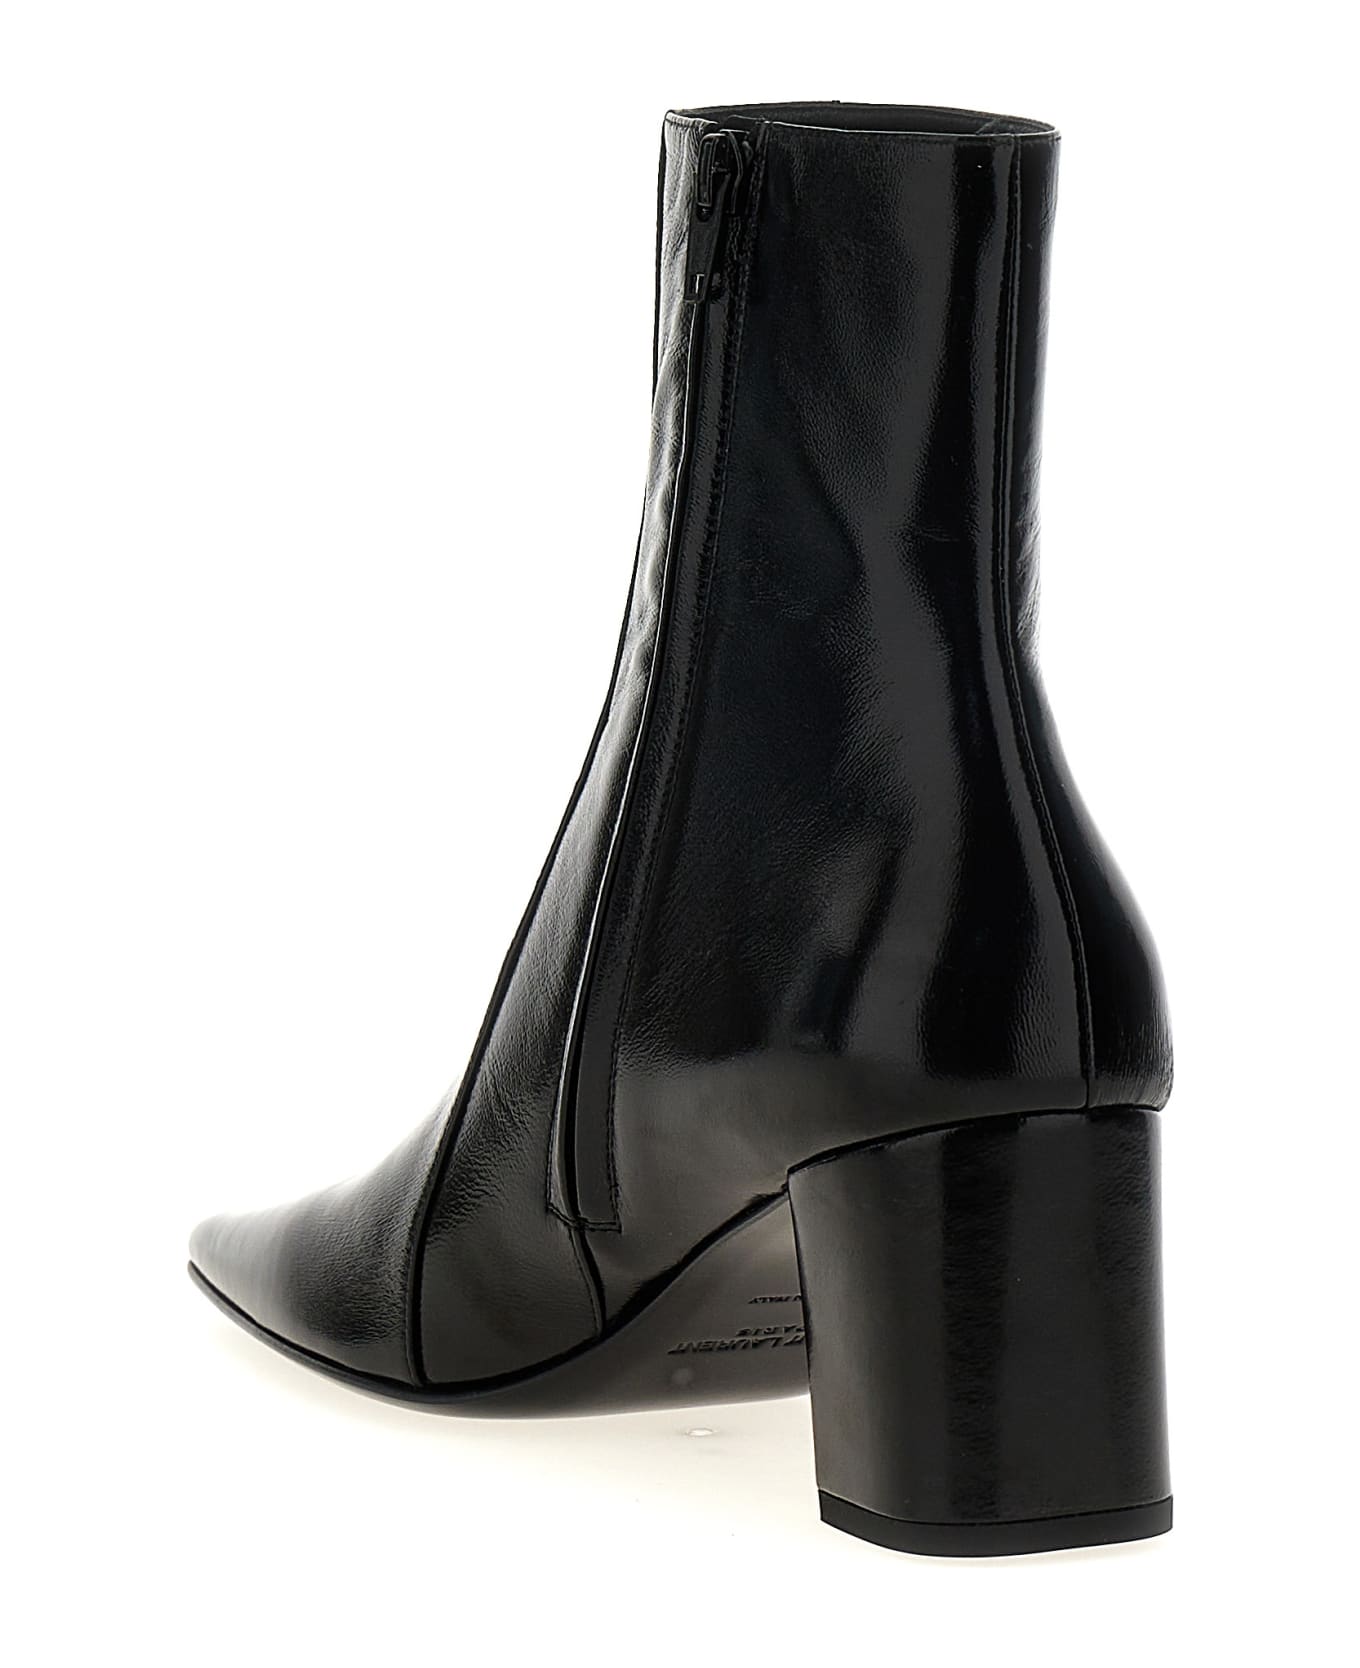 Saint Laurent Rainer Ankle Boots - Black ブーツ